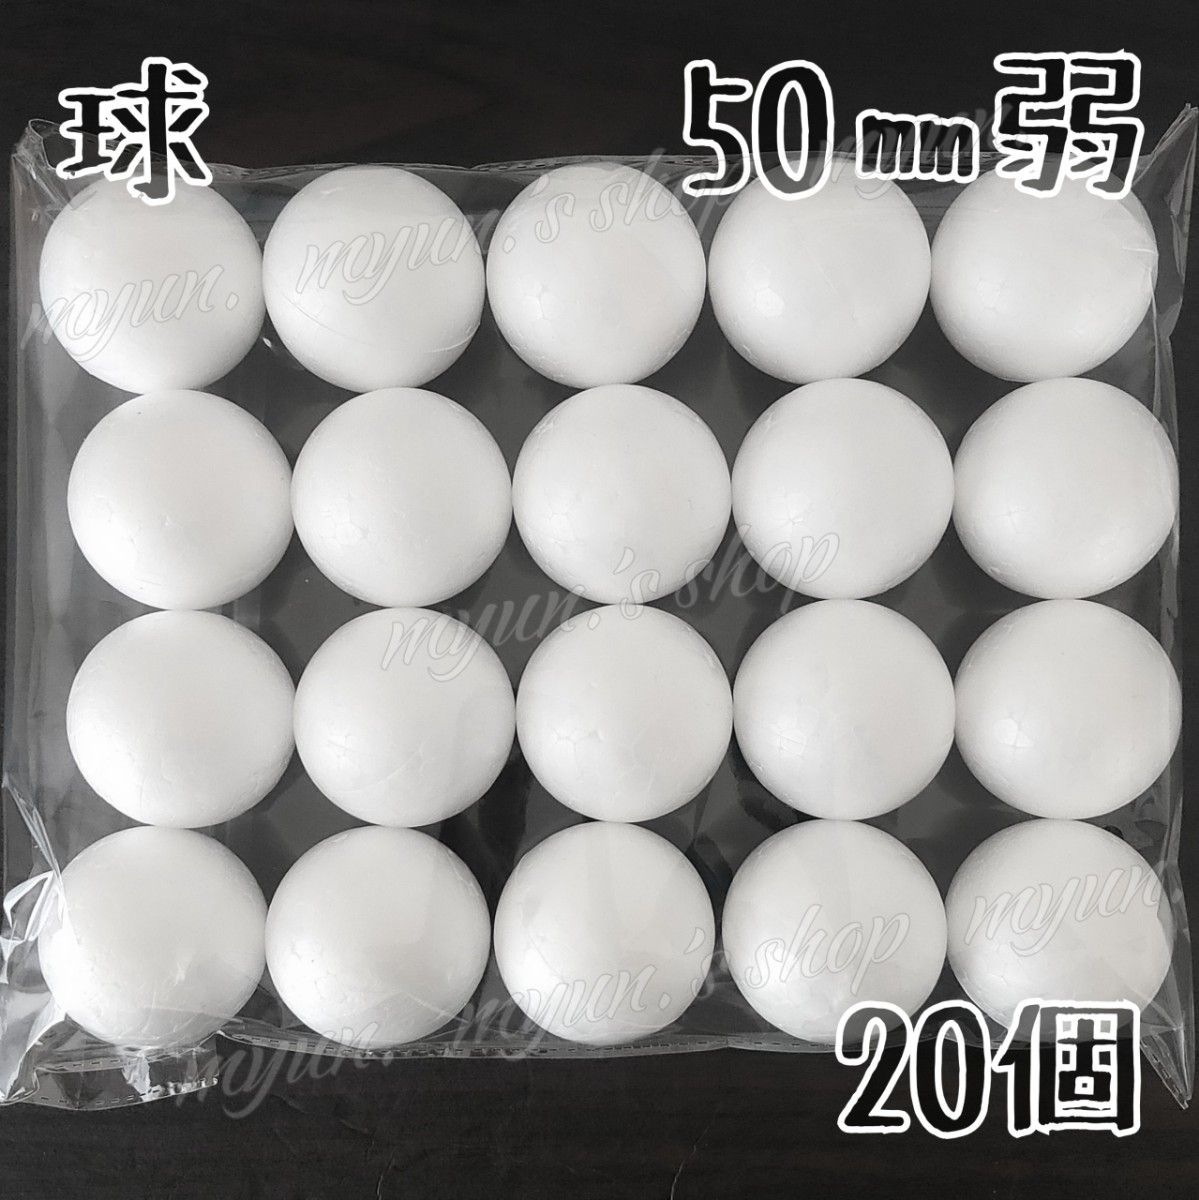 発泡スチロール 球 スチボール 50㎜弱 20P ハンドメイド 材料 土台 芯